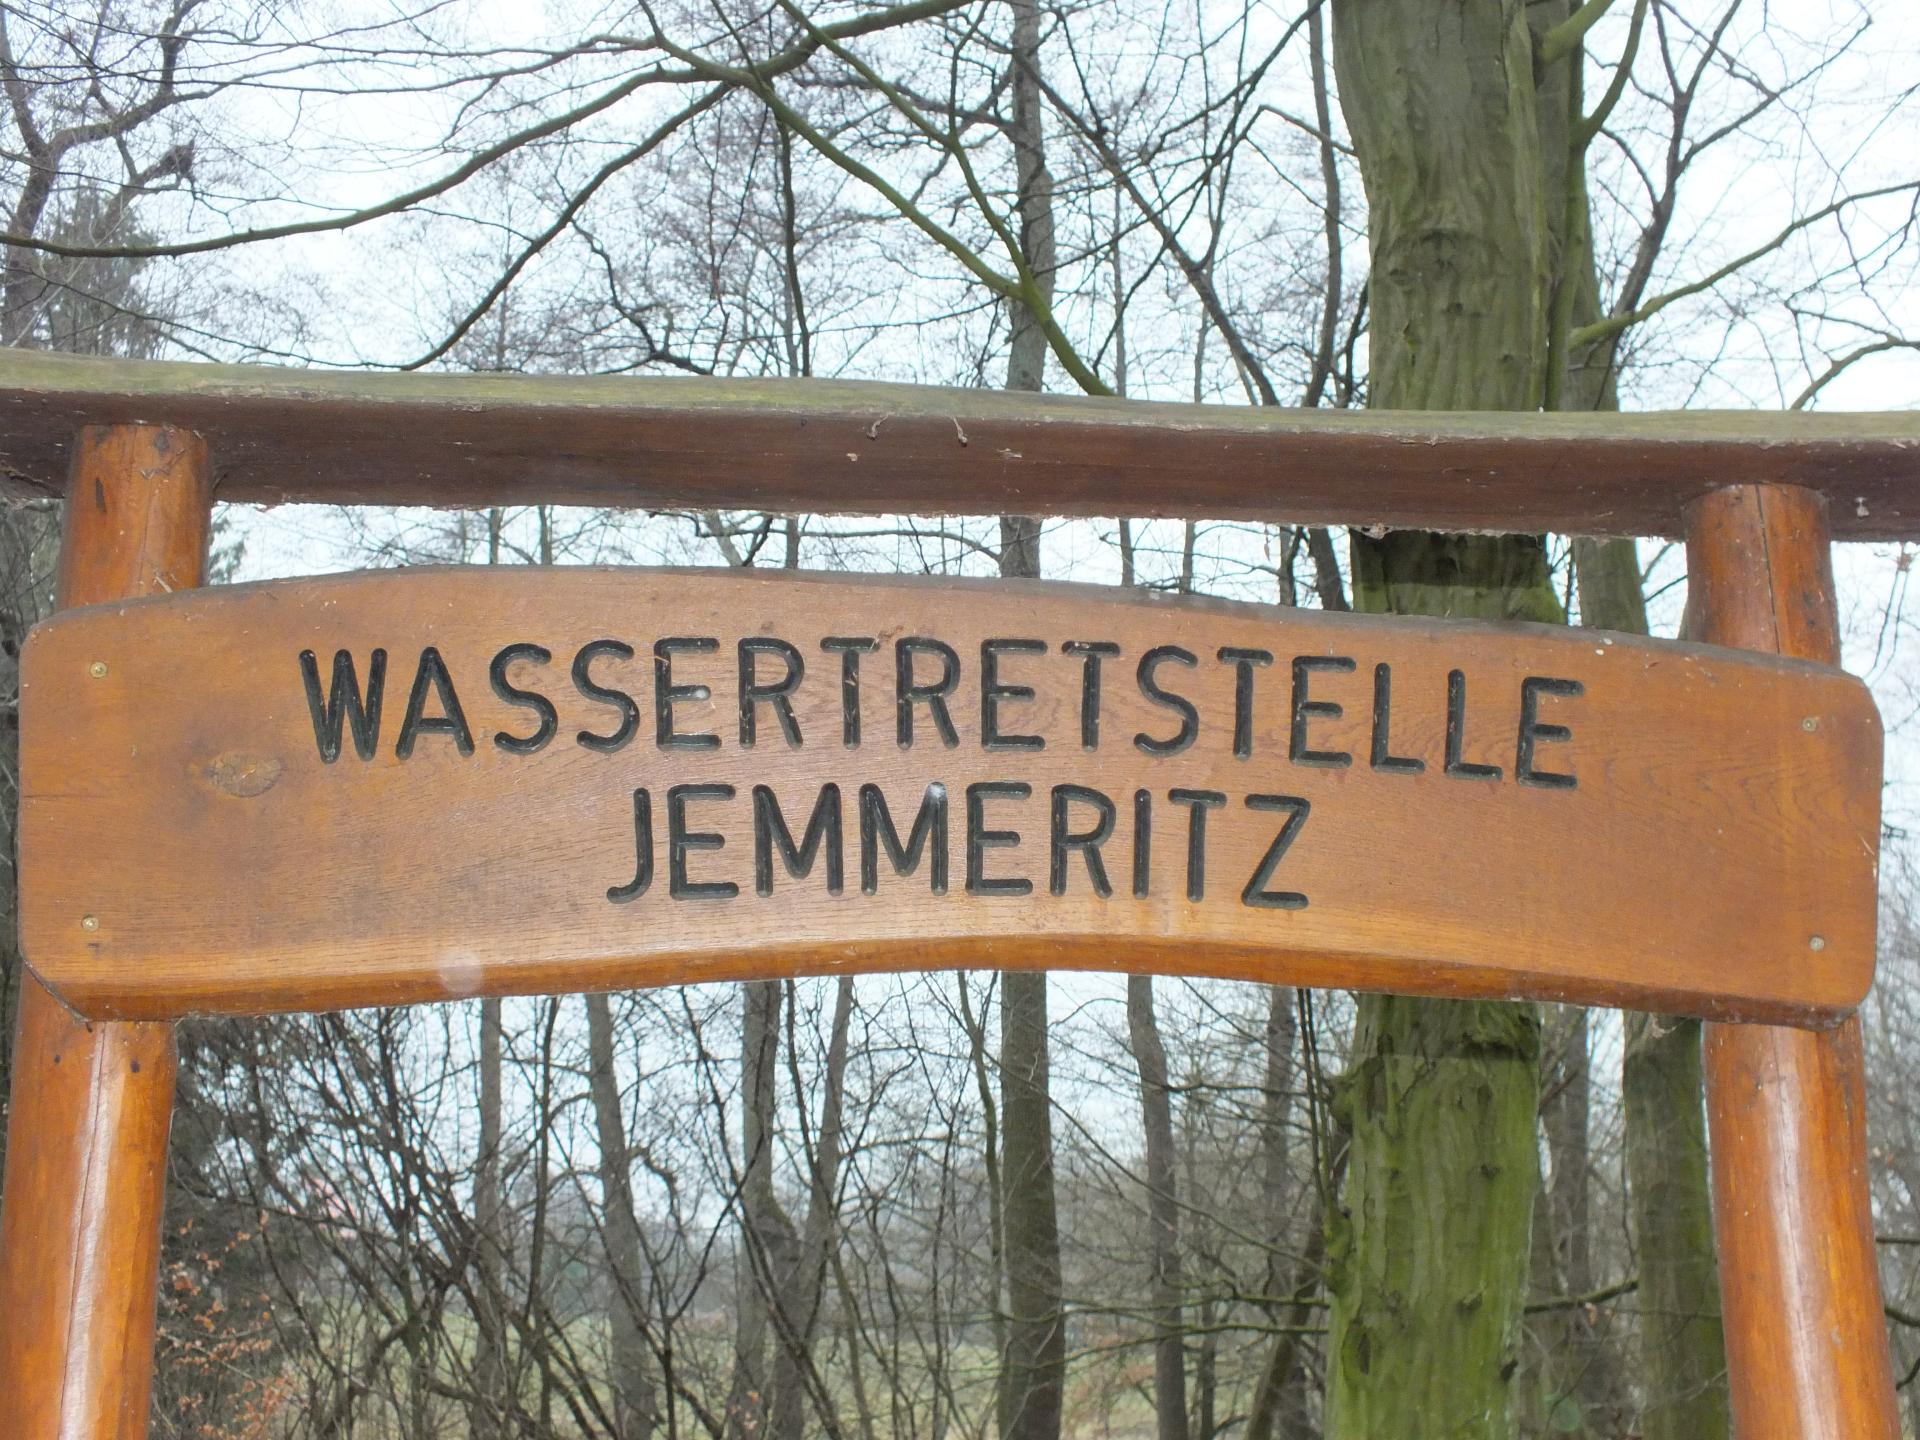 Wassertretstelle Jemmeritz